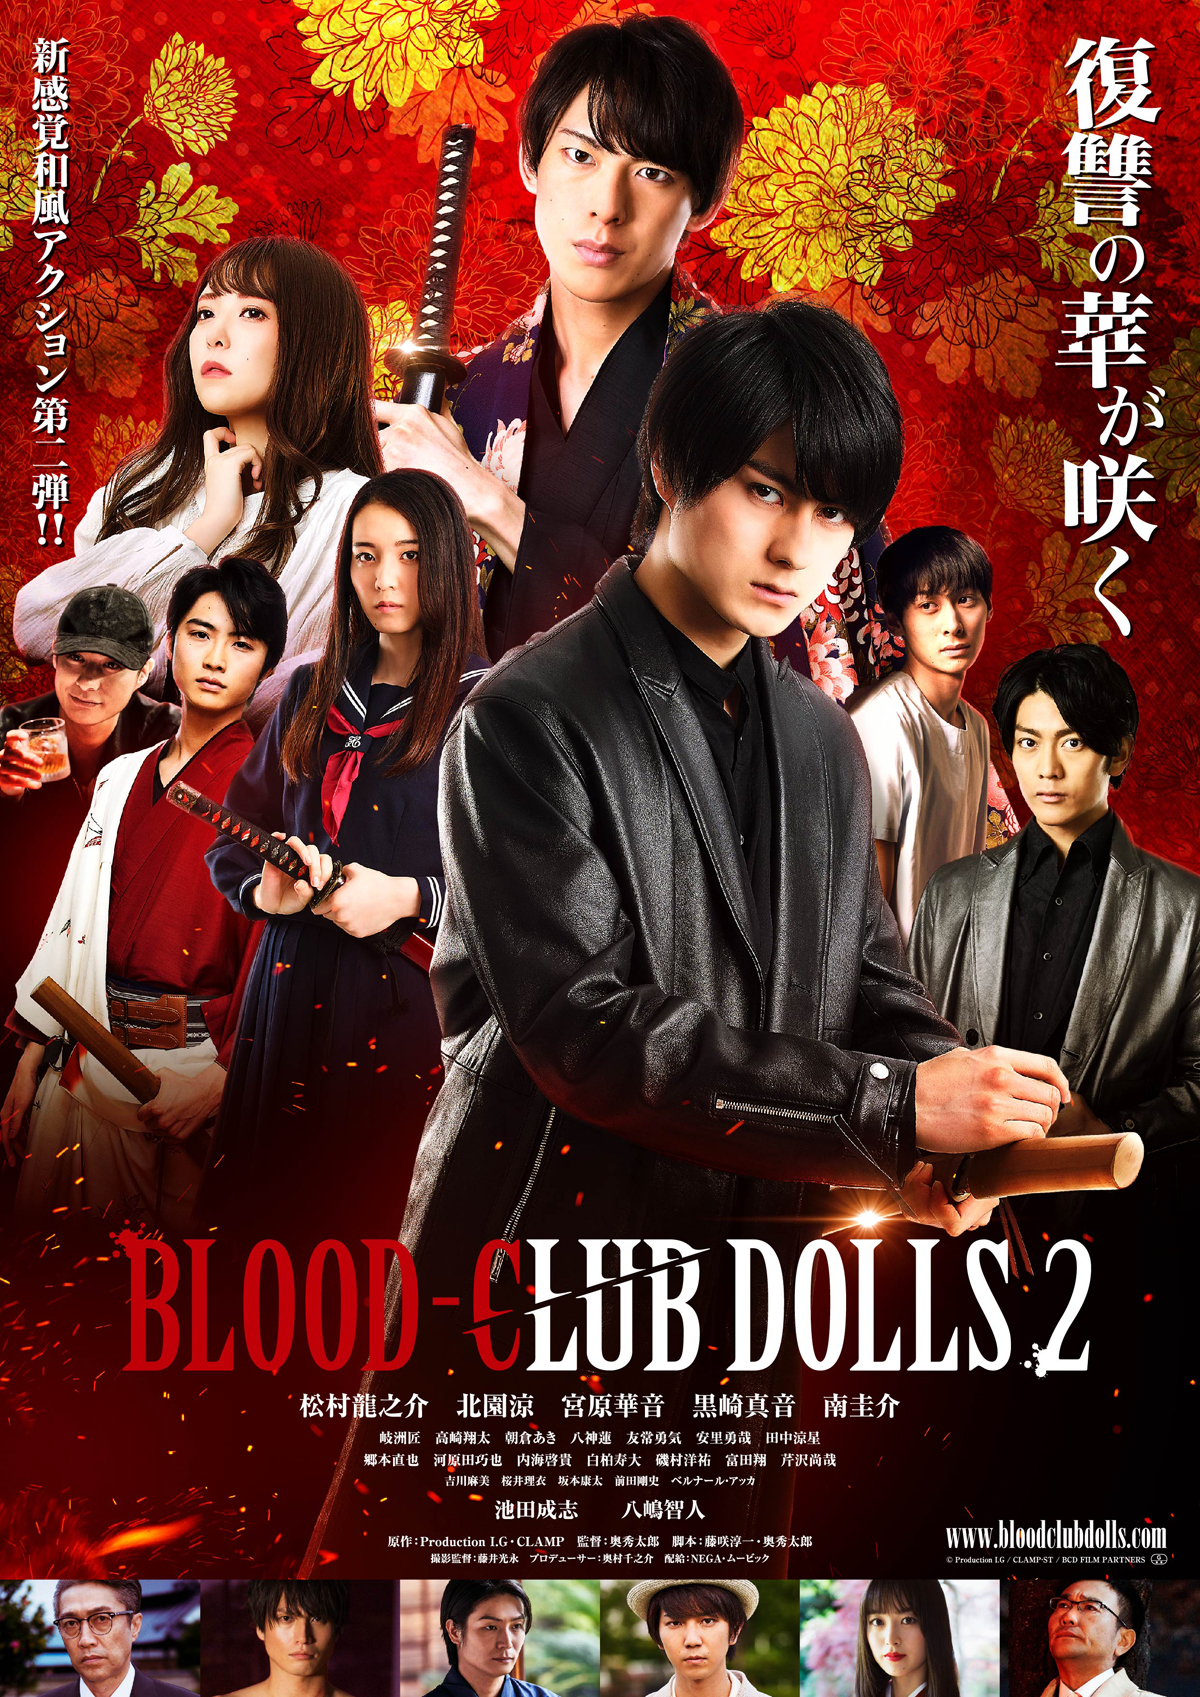 BLOOD-CLUB DOLLS 2の画像